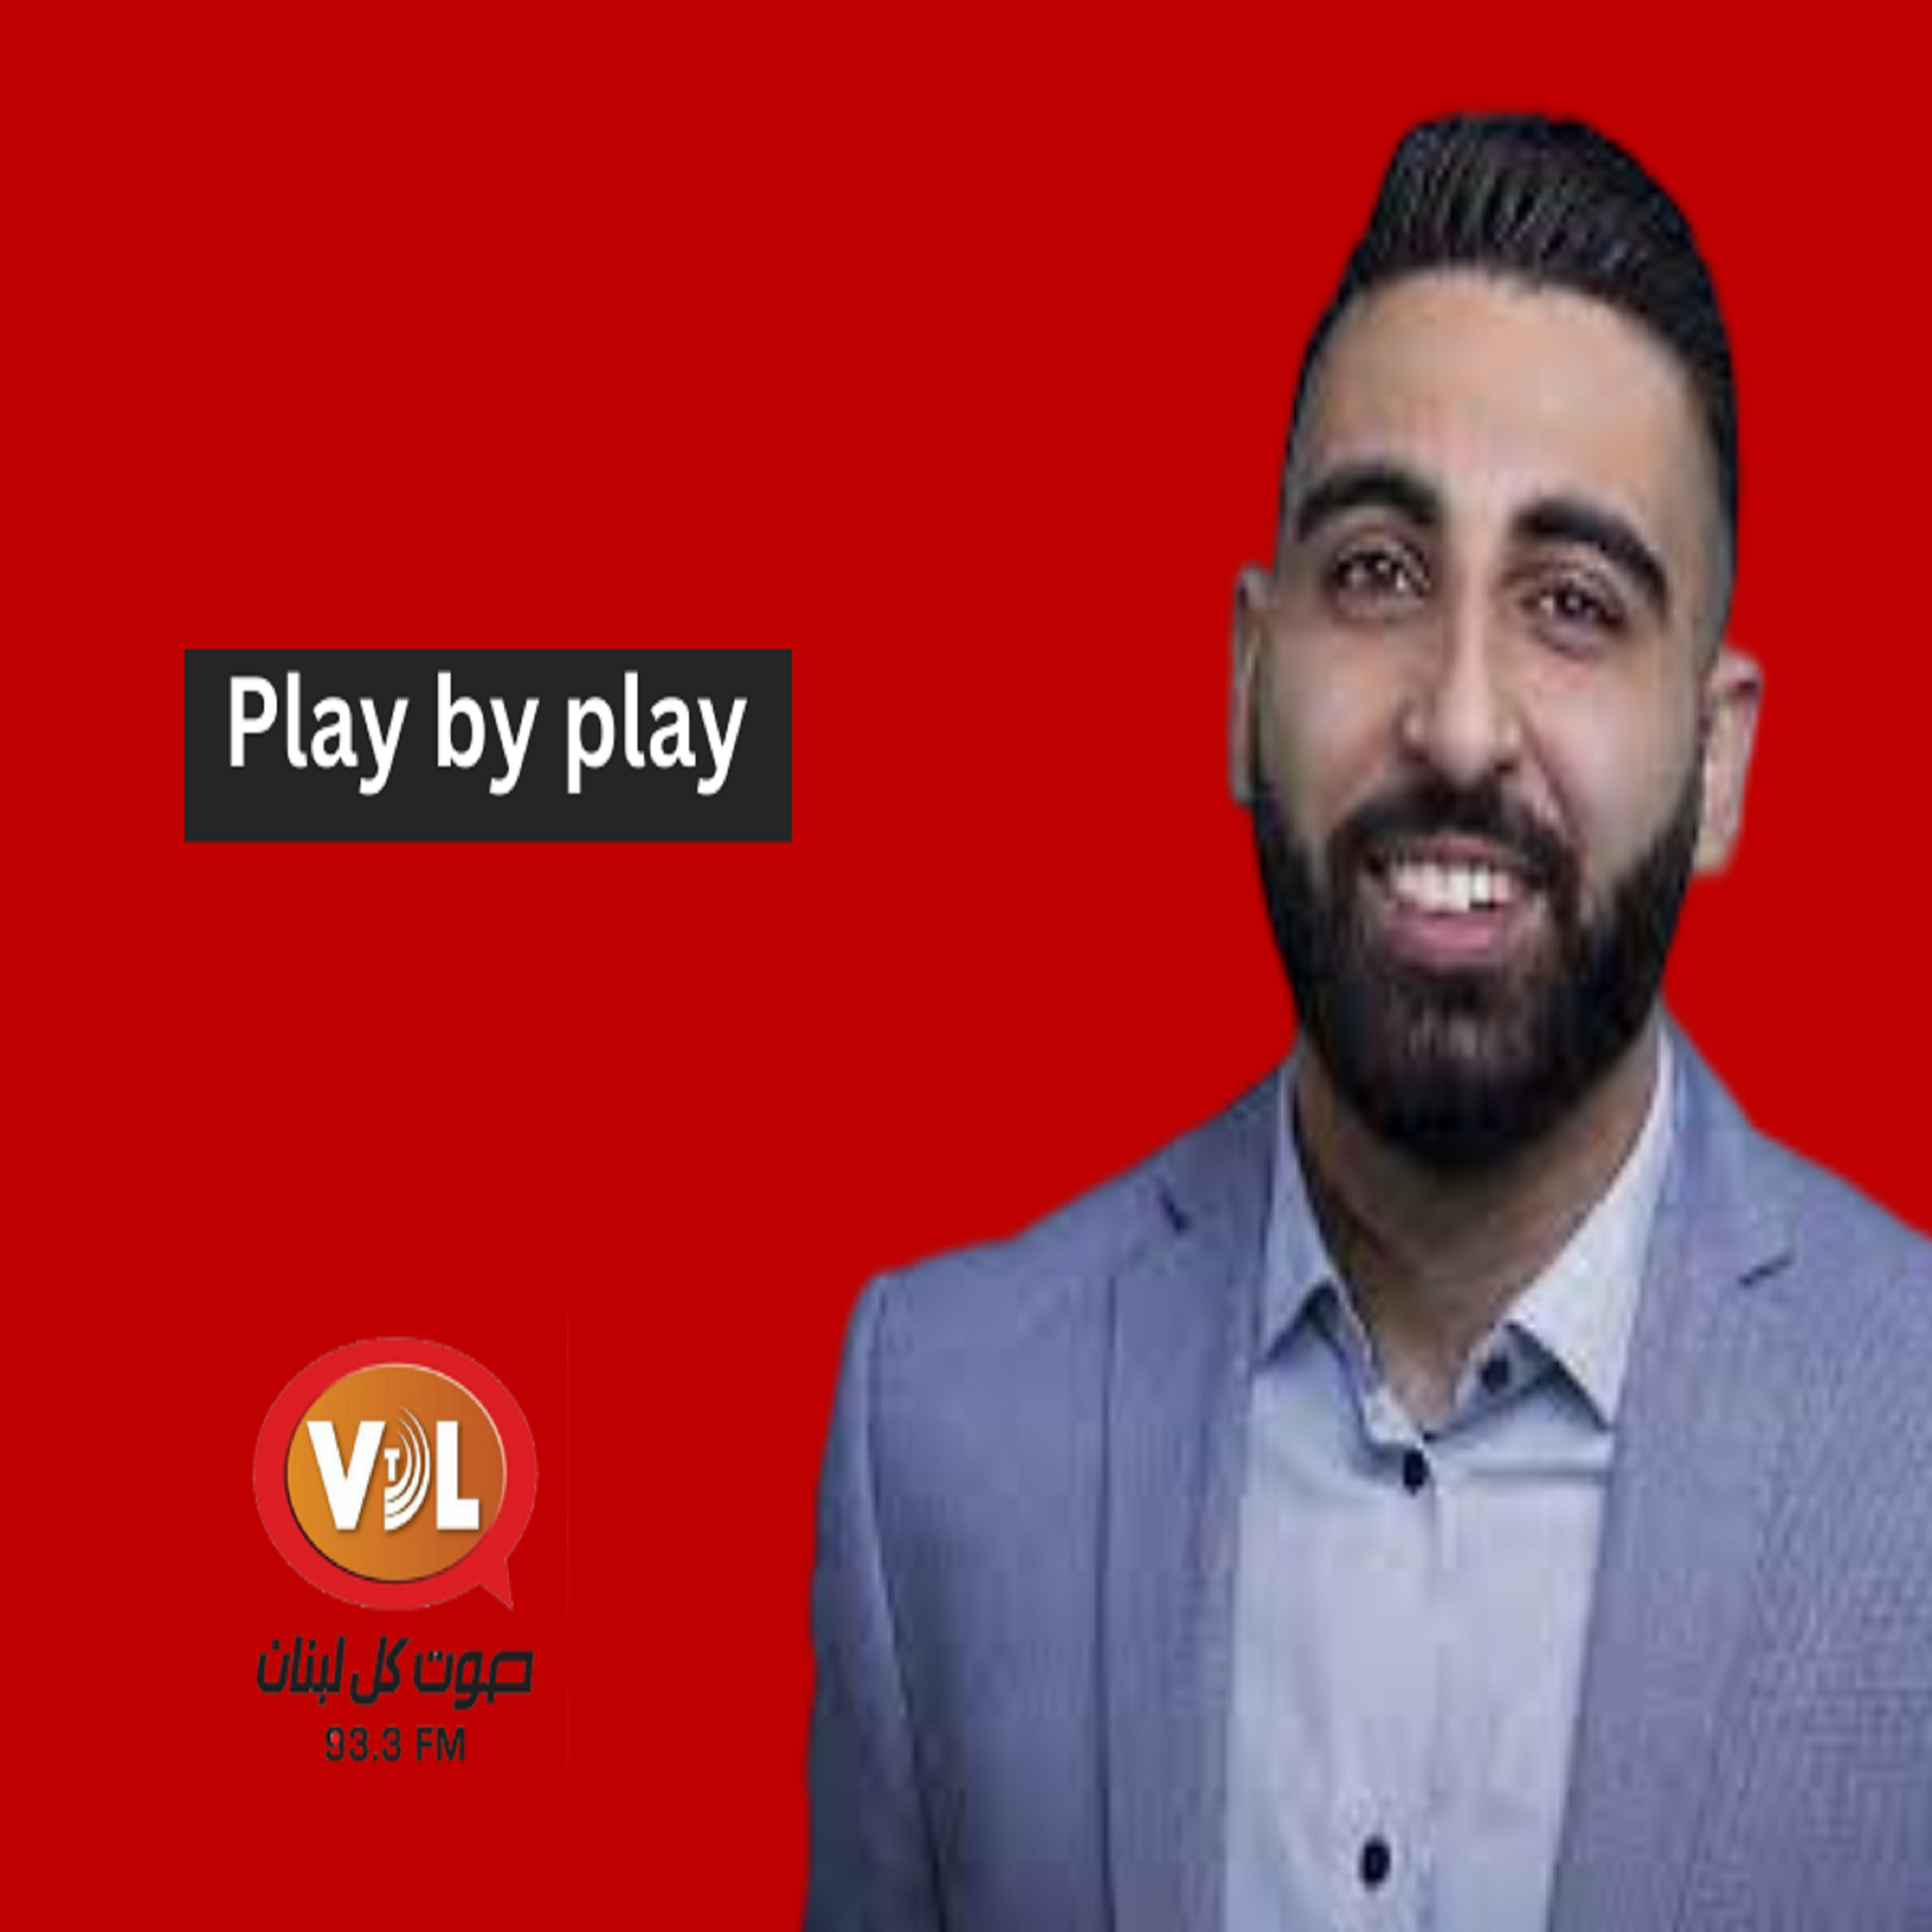 ضيف الحلقة لاعب كرة السلة عمر الترك